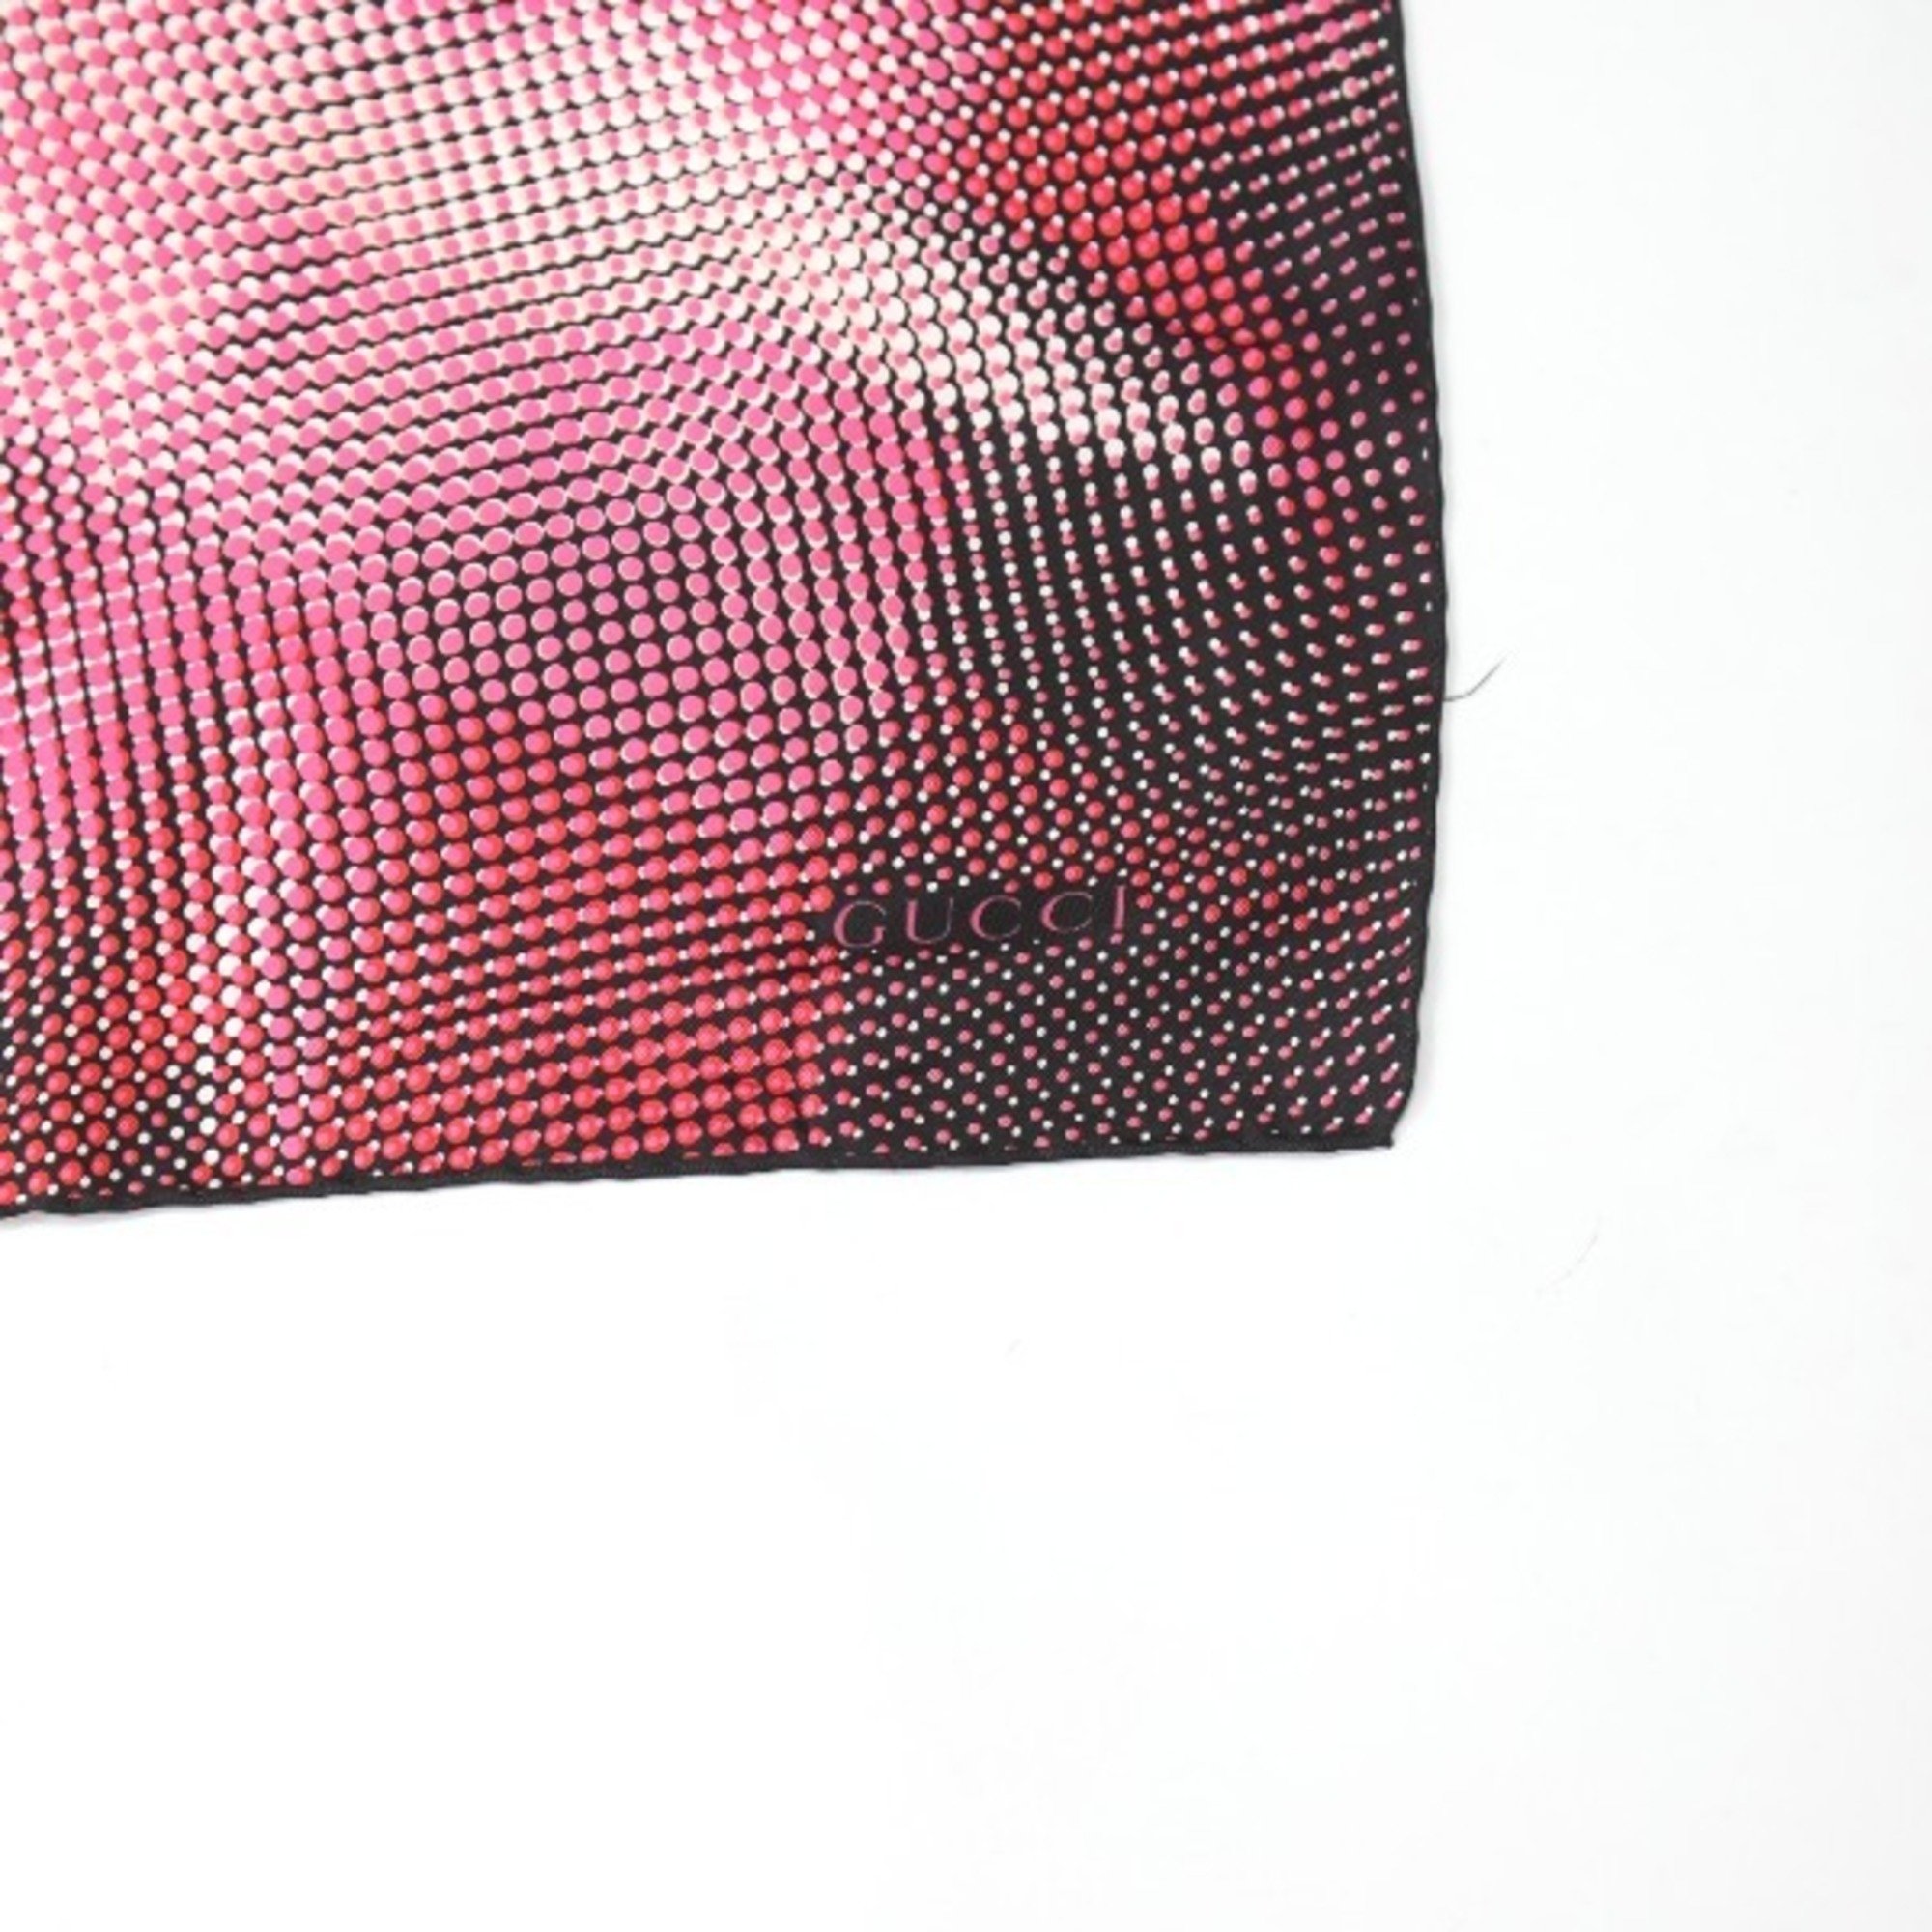 GUCCI 100% Silk Scarf Dot Gucci Pink x Black